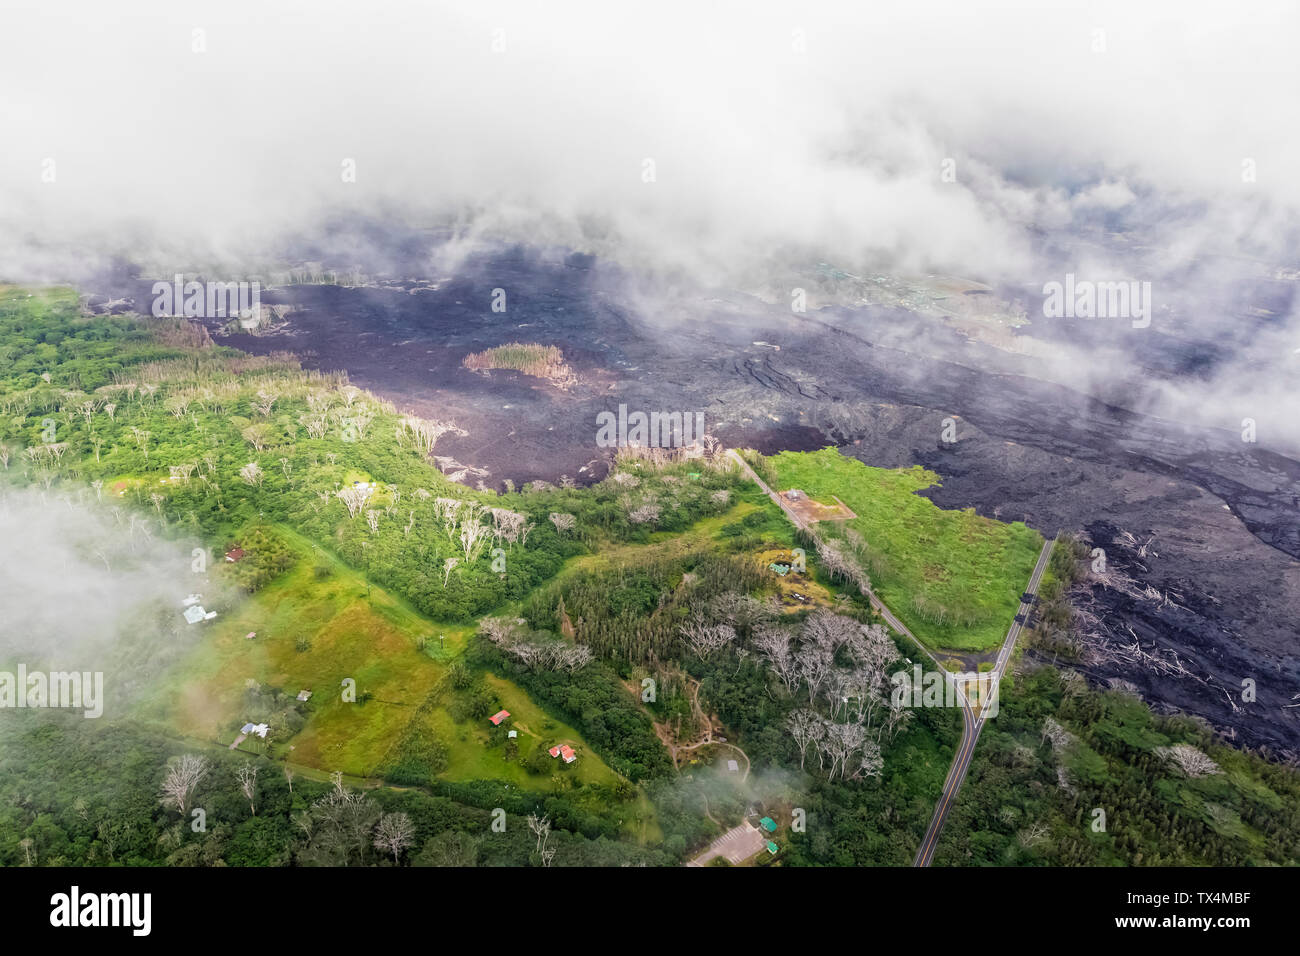 Stati Uniti d'America, Hawaii, Big Island, vista aerea degli impatti dell'eruzione vulcanica in 2018 Foto Stock